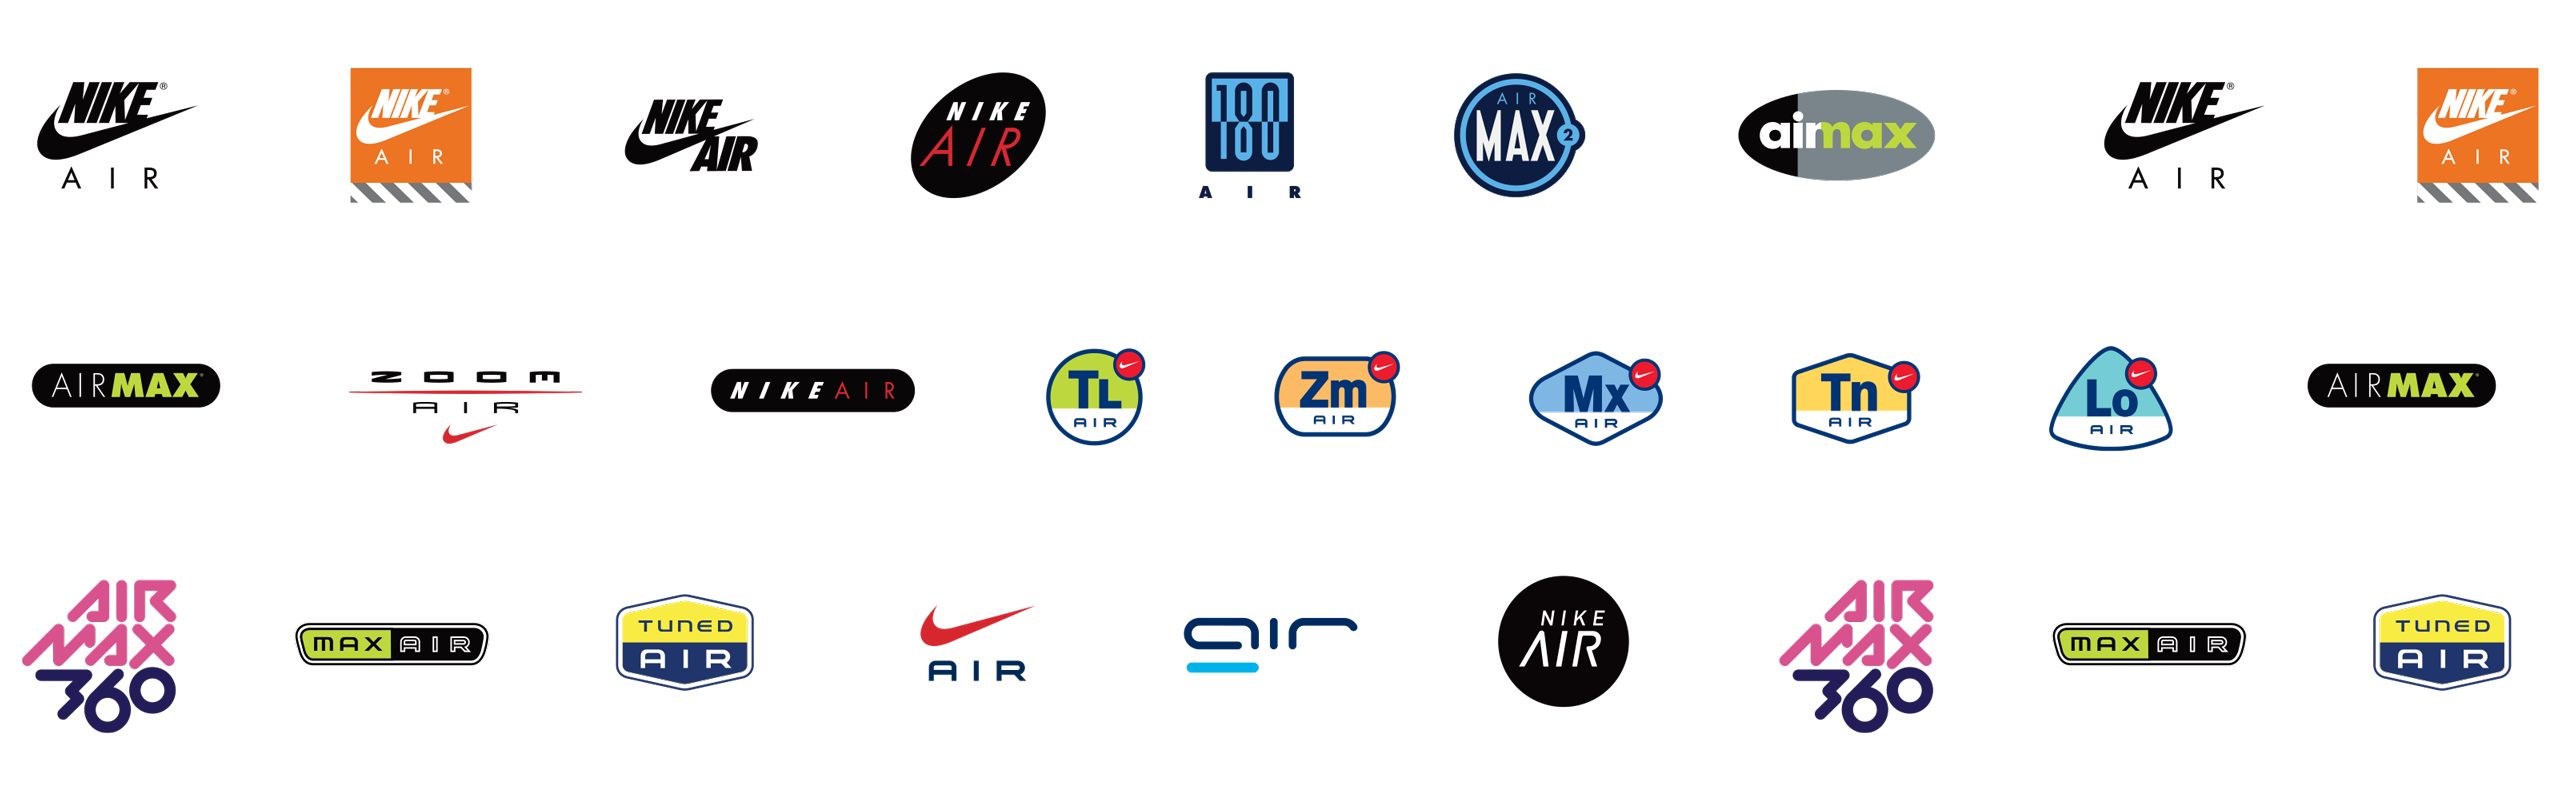 Nike Air Rebrand - Brian Metcalf